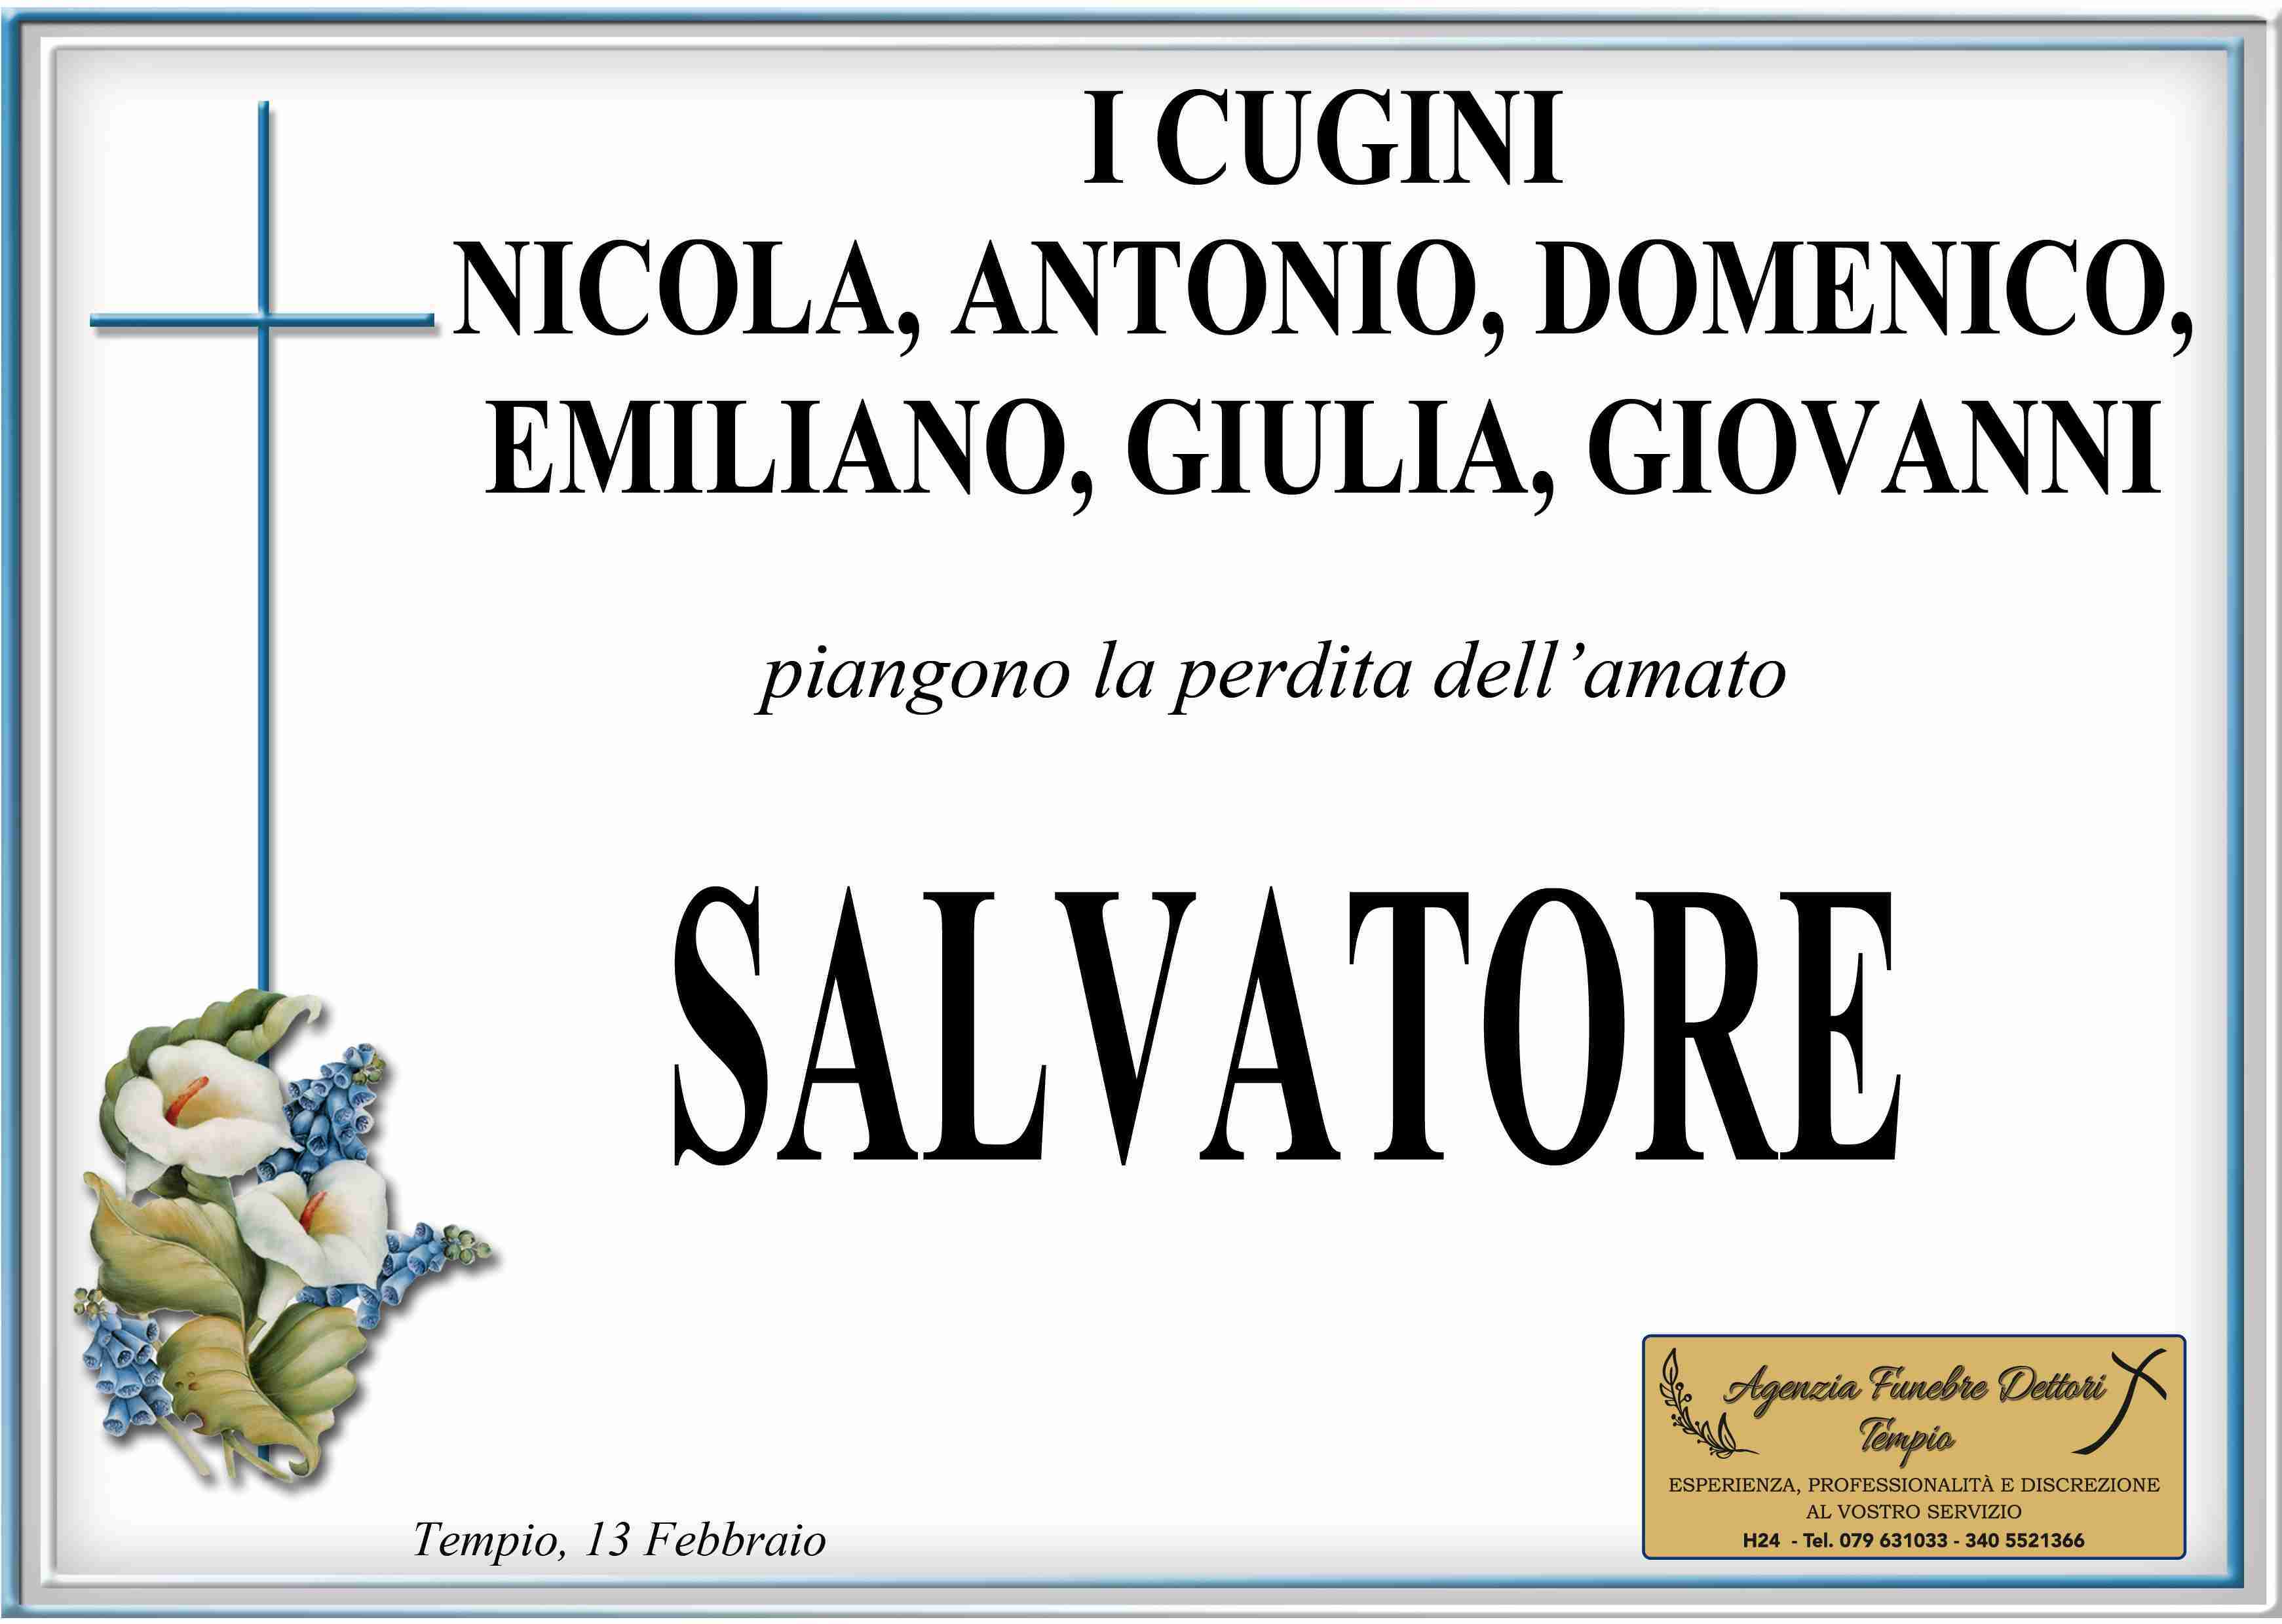 Salvatore Sanna